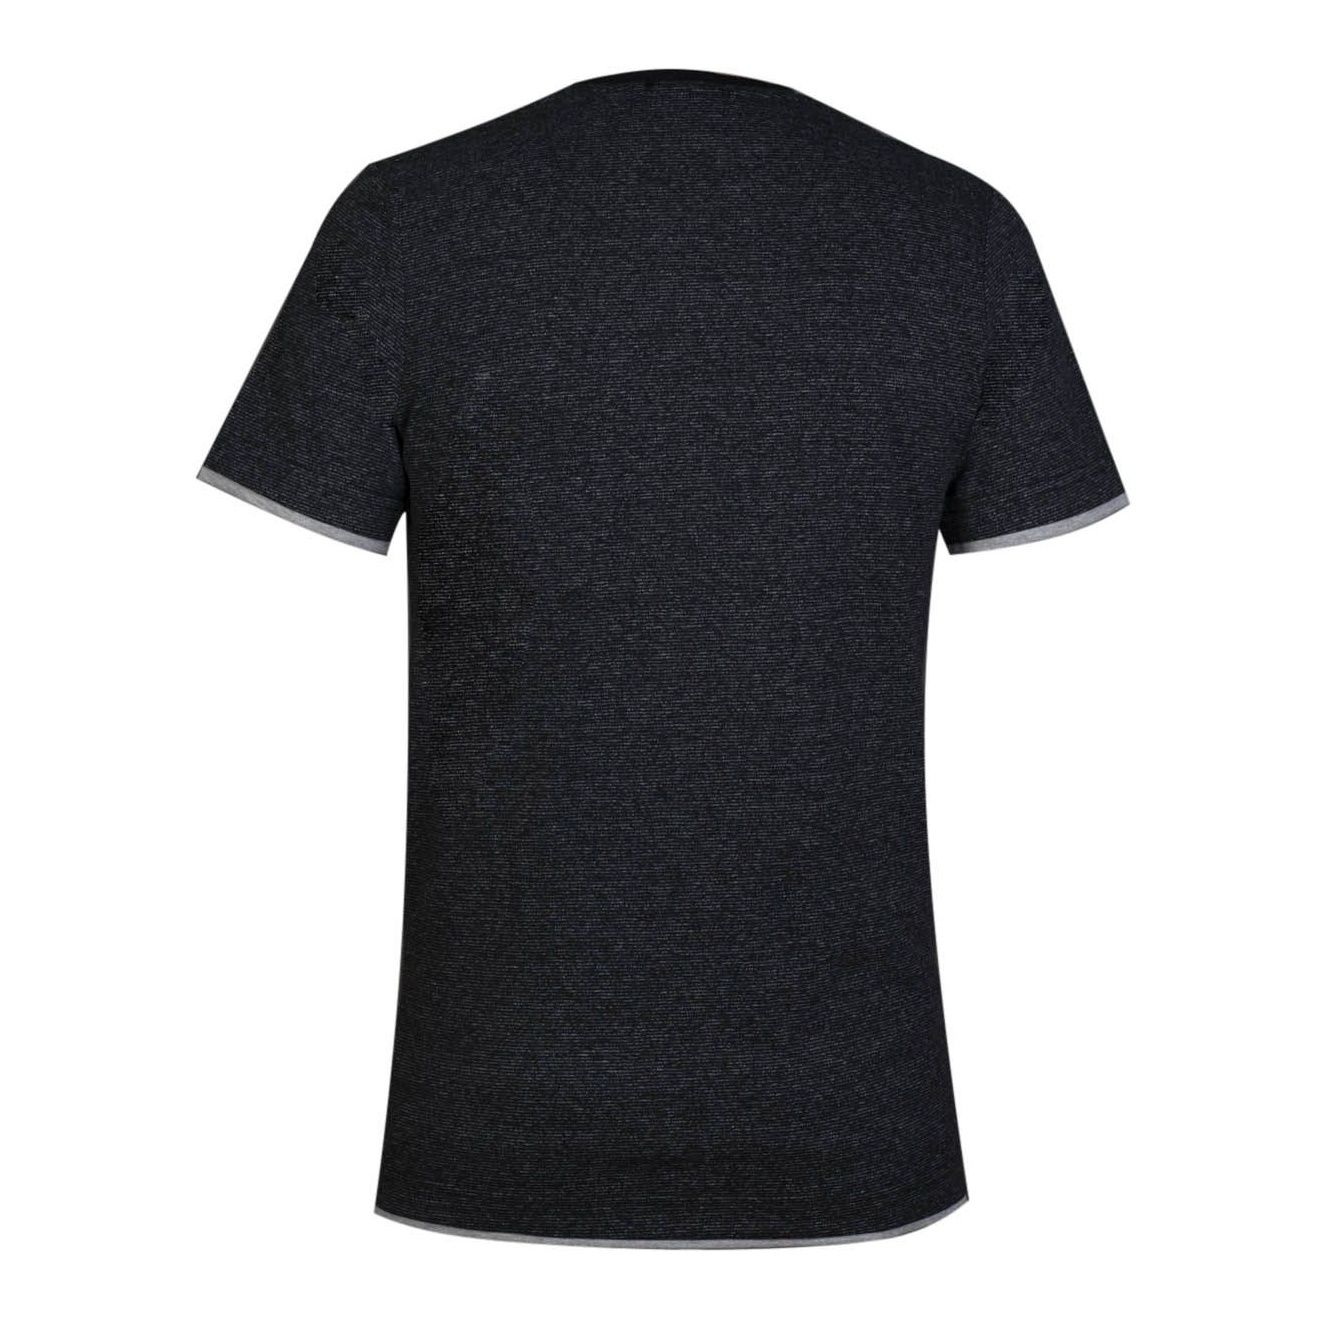 تی شرت مردانه مدل pp کد 253-245